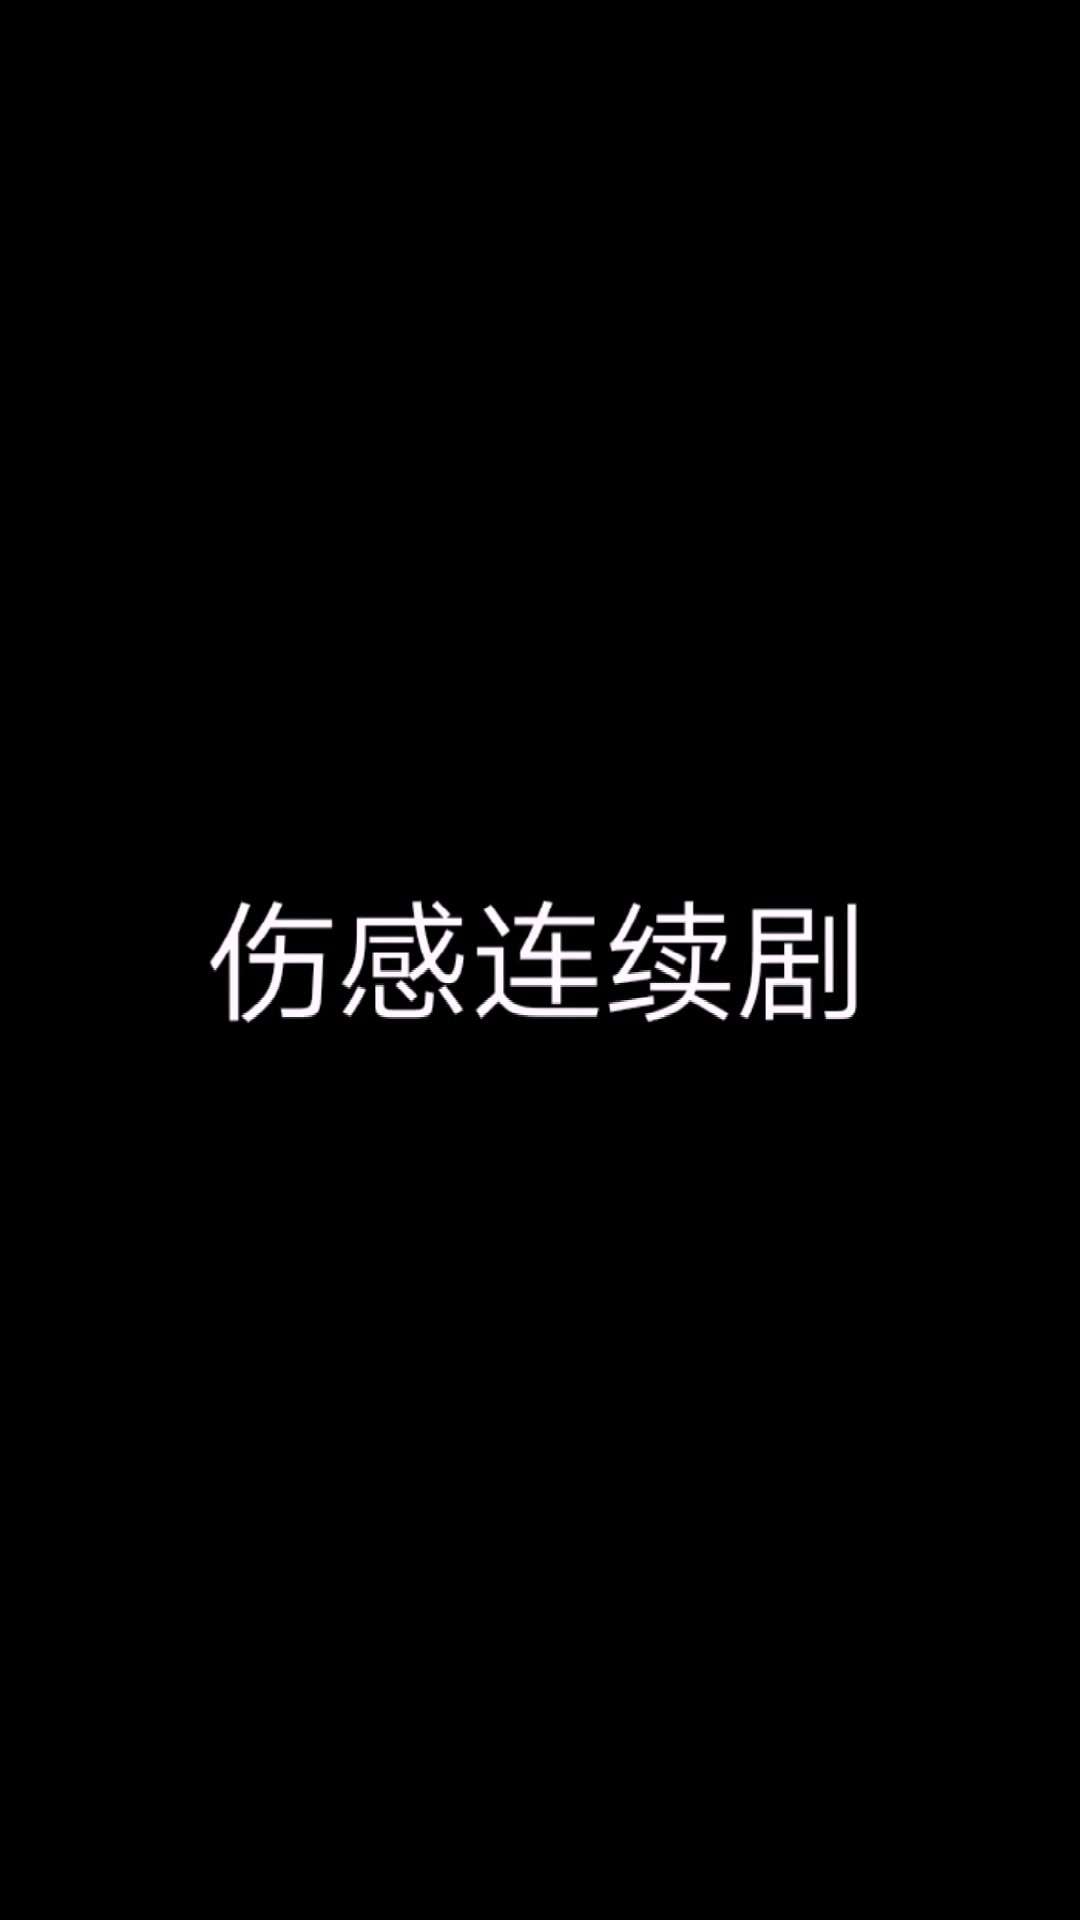 导演高杨短视频作品《背叛之重生》- 全集